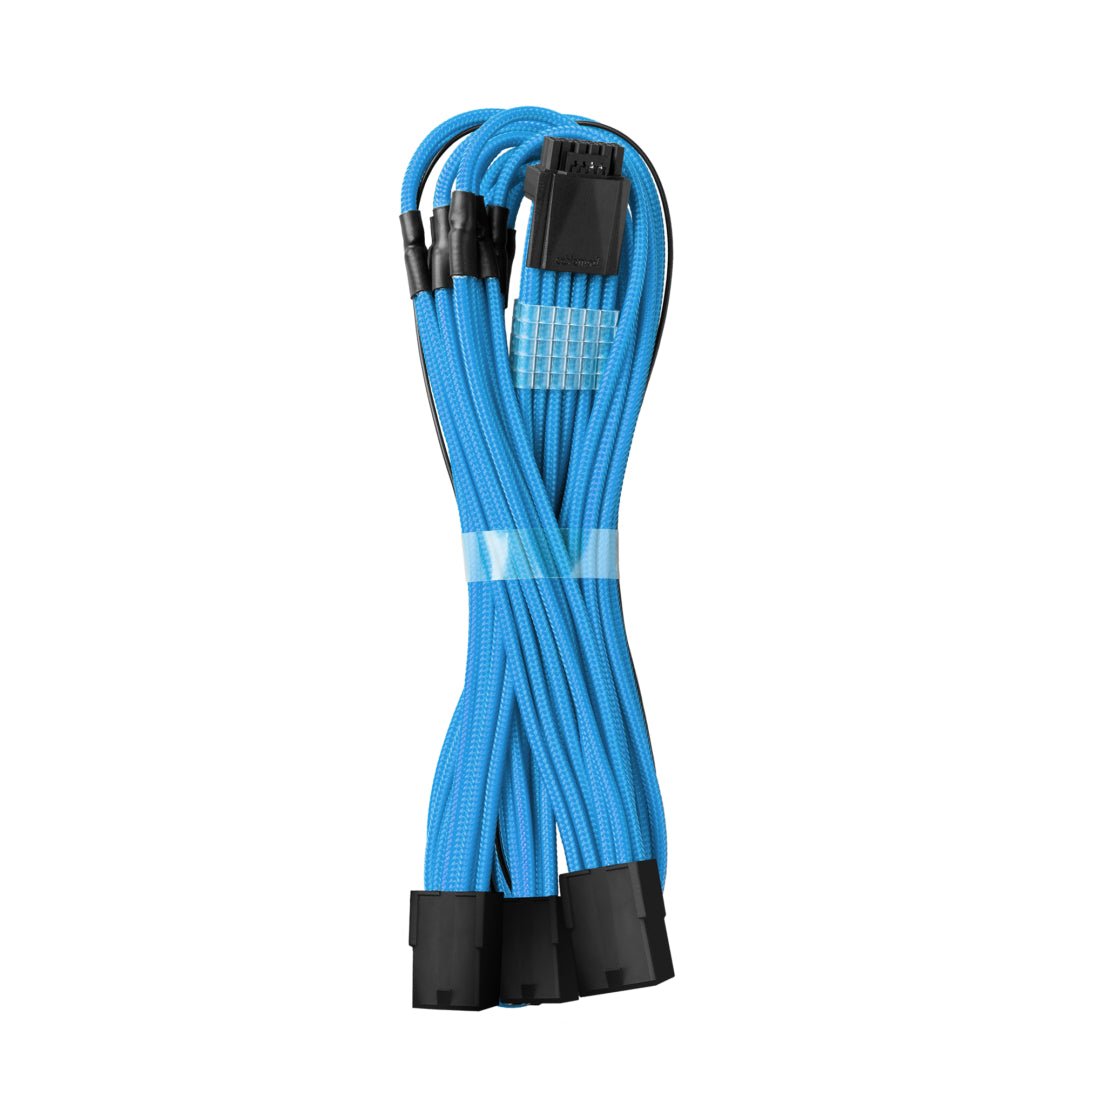 CableMod Pro ModMesh 12VHPWR PCI-e Cable Extension (Light Blue, 16-pin to Triple 8-pin, 45cm) - كابل - Store 974 | ستور ٩٧٤